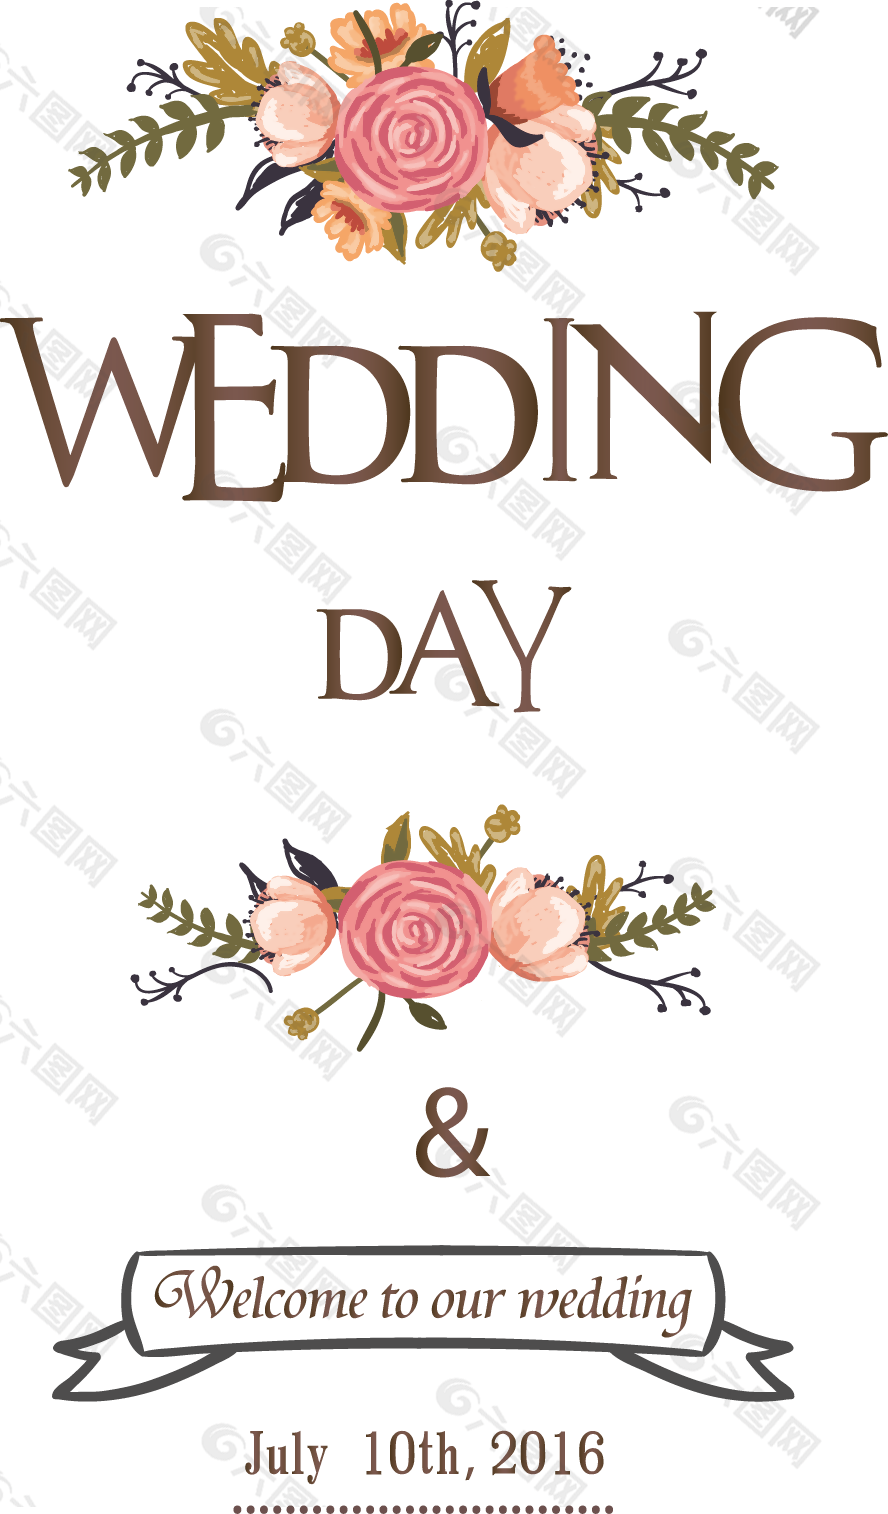 婚礼小装饰图片 婚礼小装饰素材 婚礼小装饰模板免费下载 六图网